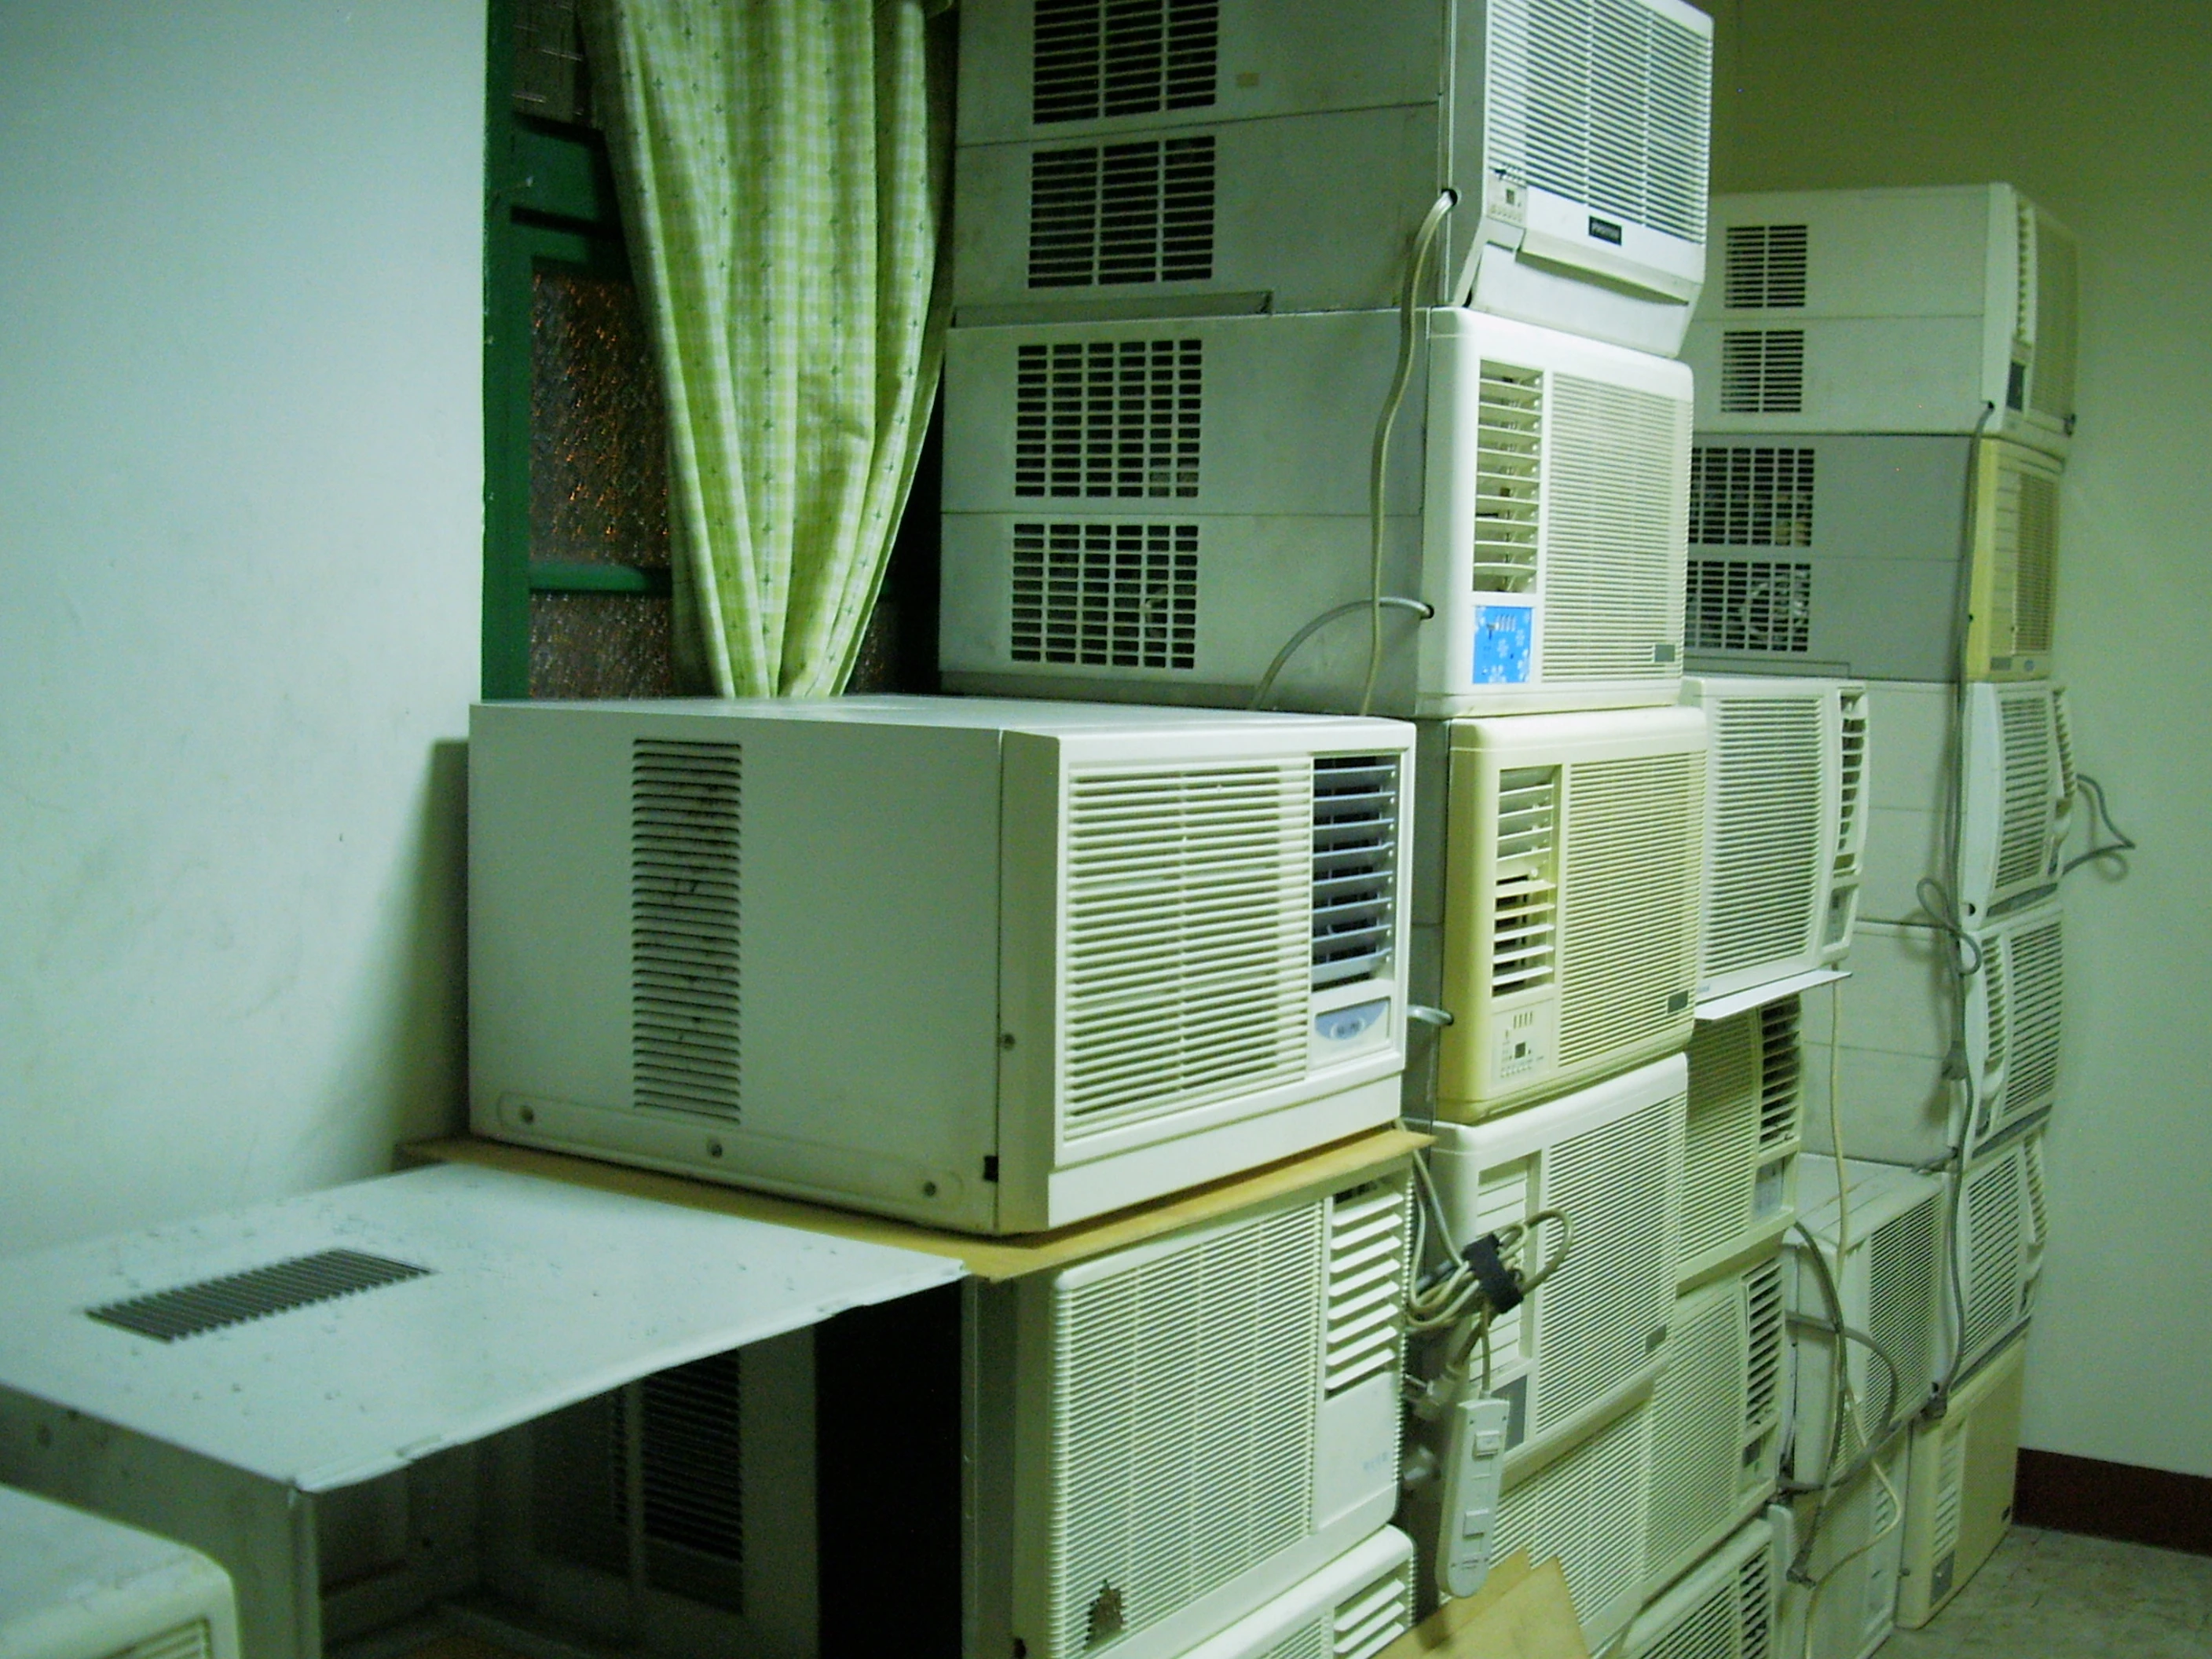 舊冷氣回收-二手家電暢貨中心- 收購中古